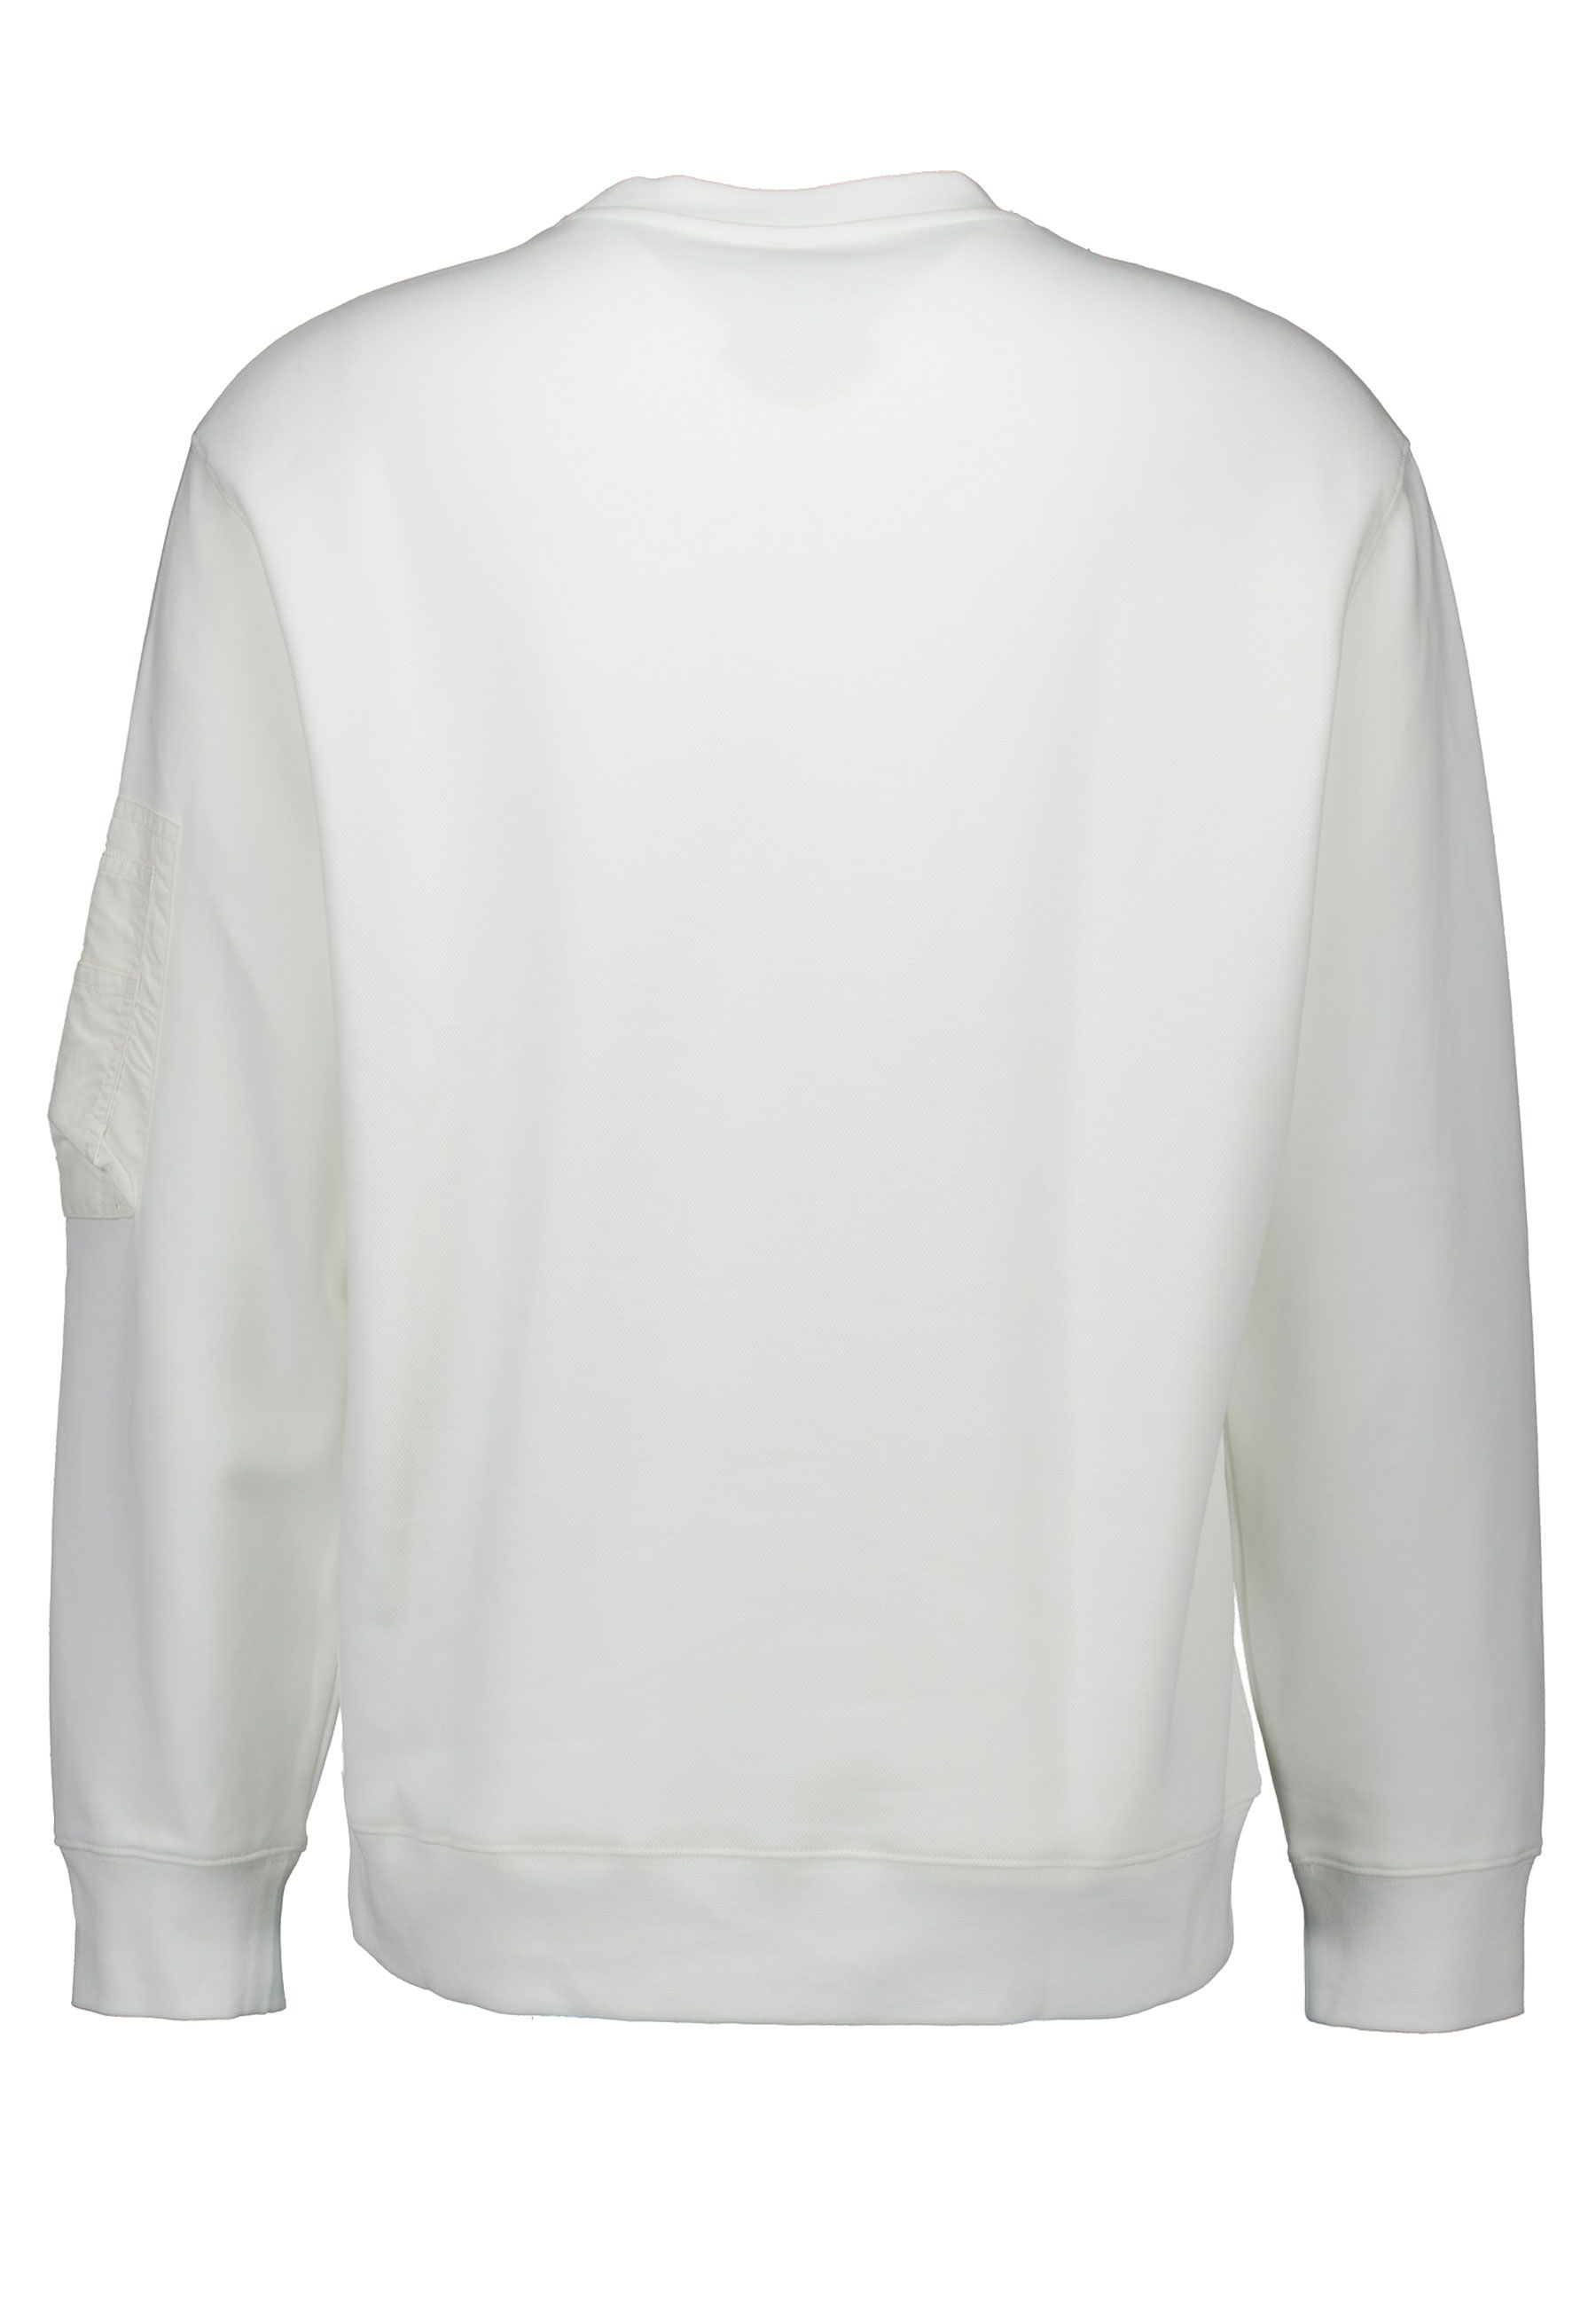 Armani Exchange  Sweaters Off White 3dzmjj Zjxlz